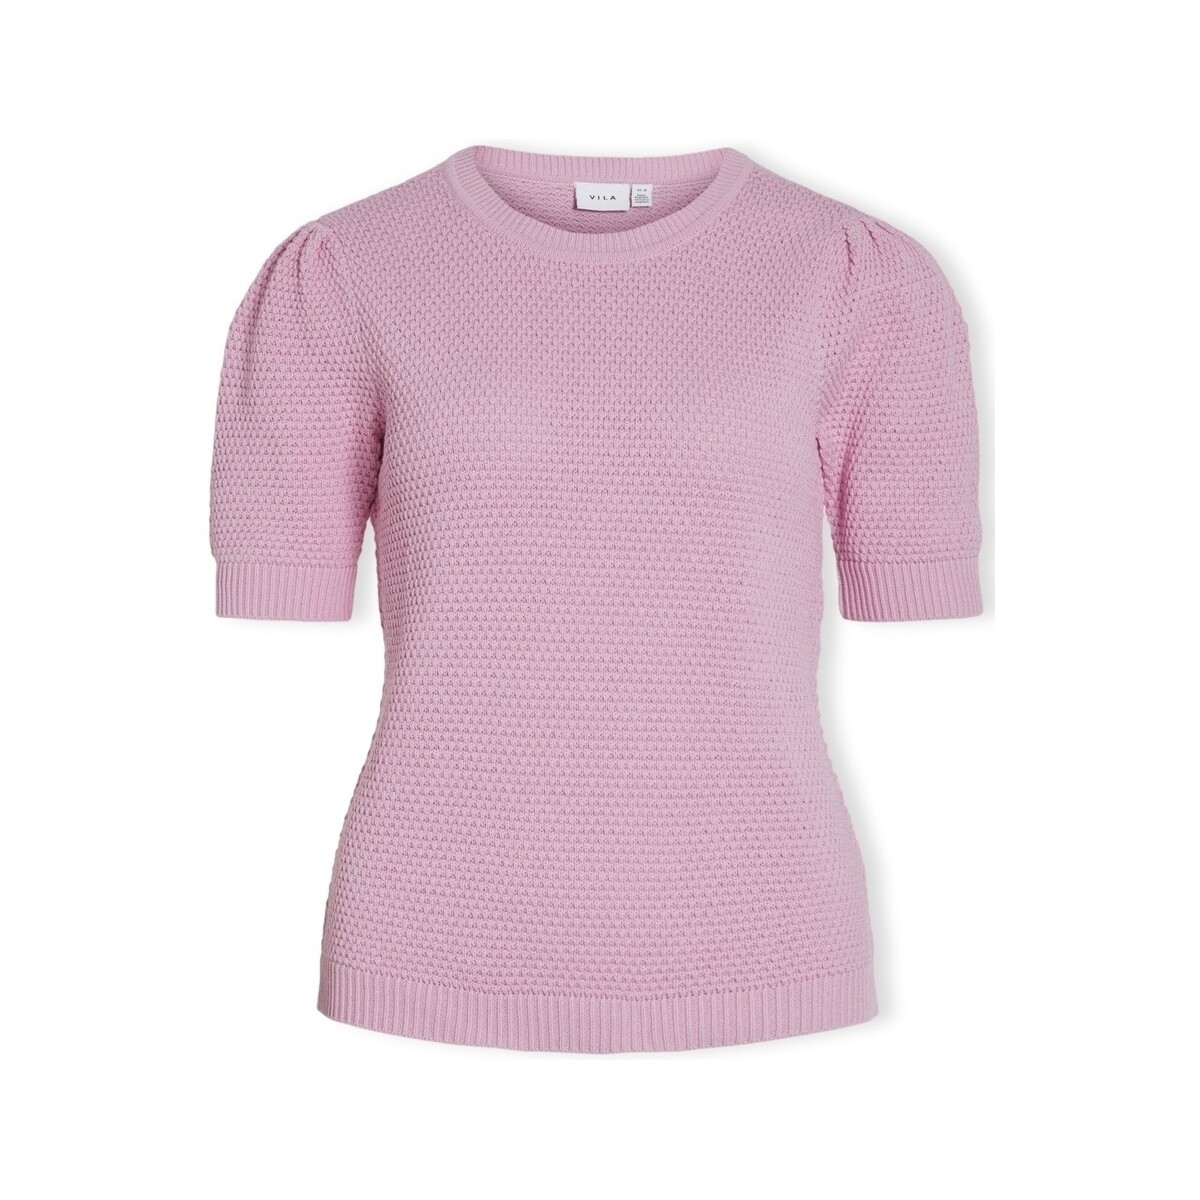 Textiel Dames Tops / Blousjes Vila Noos Dalo Knit  S/S - Pastel Lavender Roze